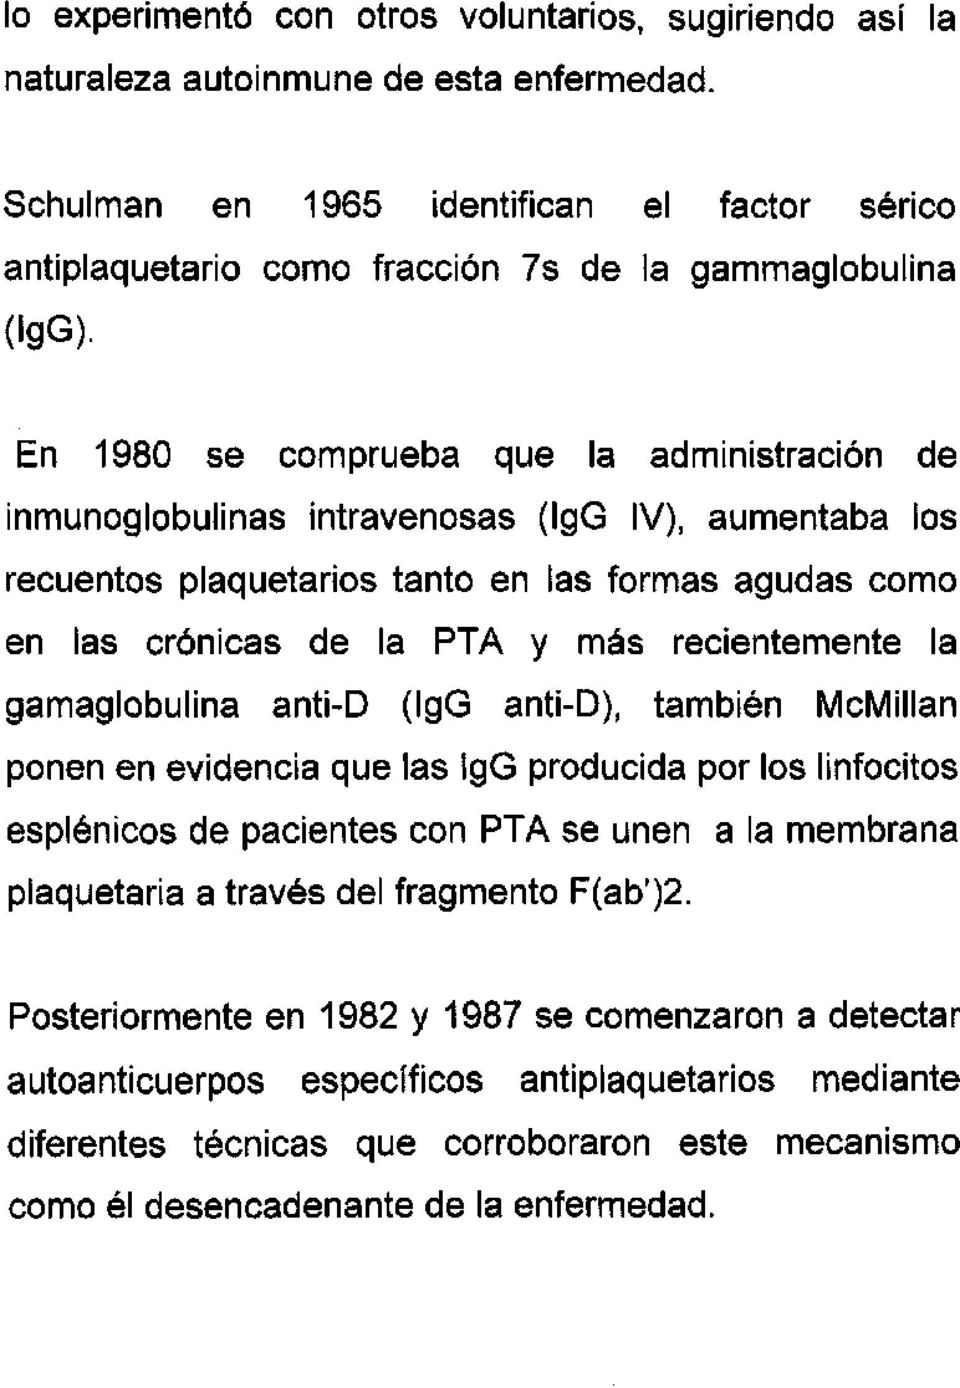 En 1980 se comprueba que la administración de inmunoglobulinas intravenosas (IgG IV), aumentaba los recuentos plaquetarios tanto en las formas agudas como en las crónicas de la PTA y más